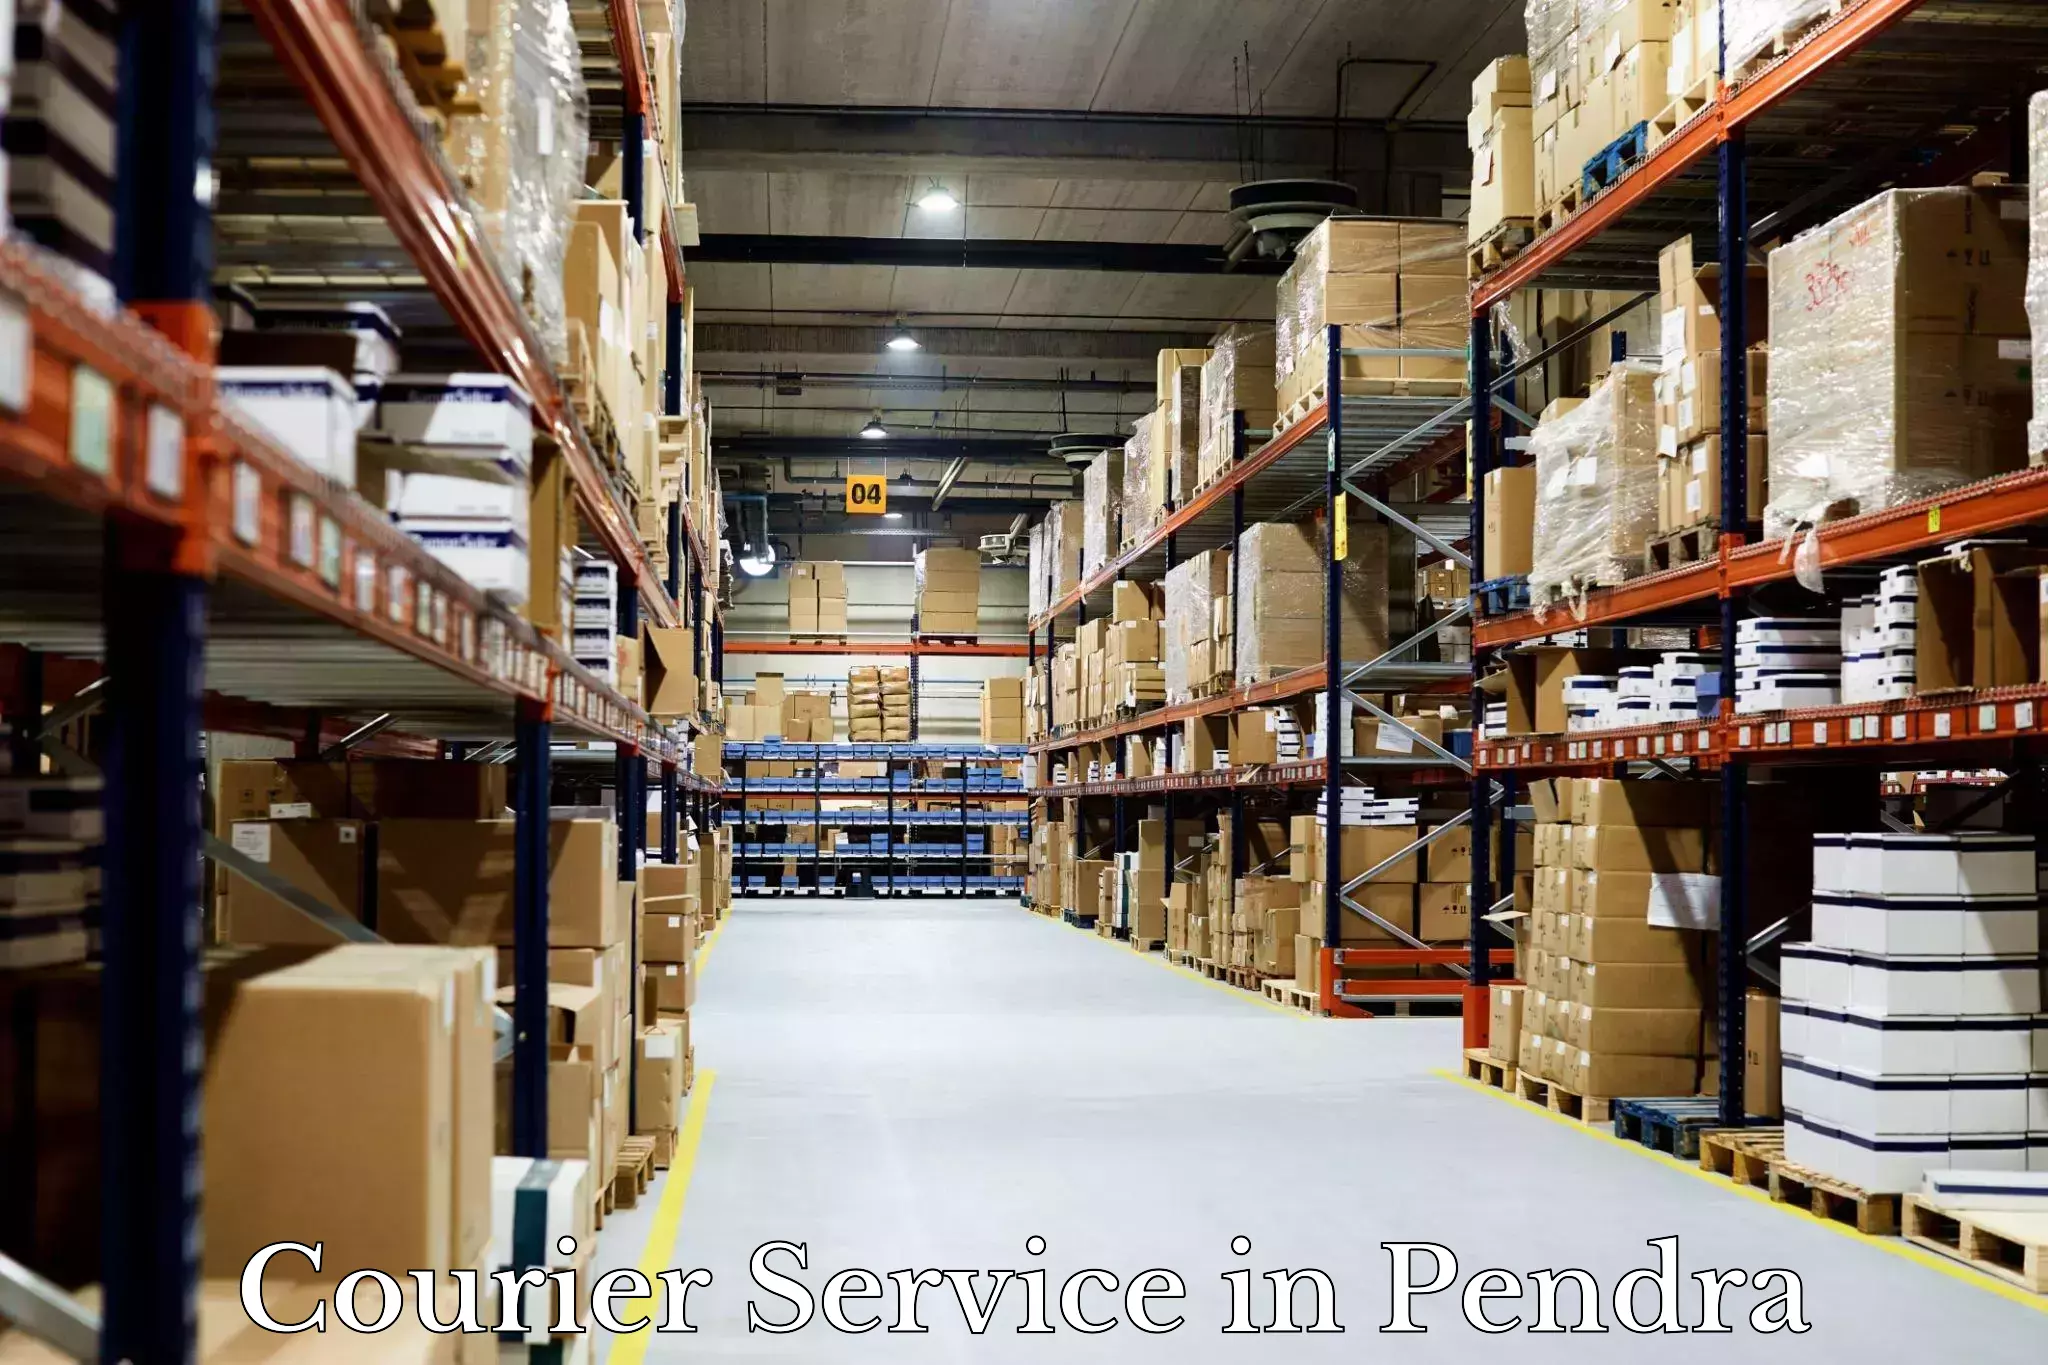 Logistics management in Pendra